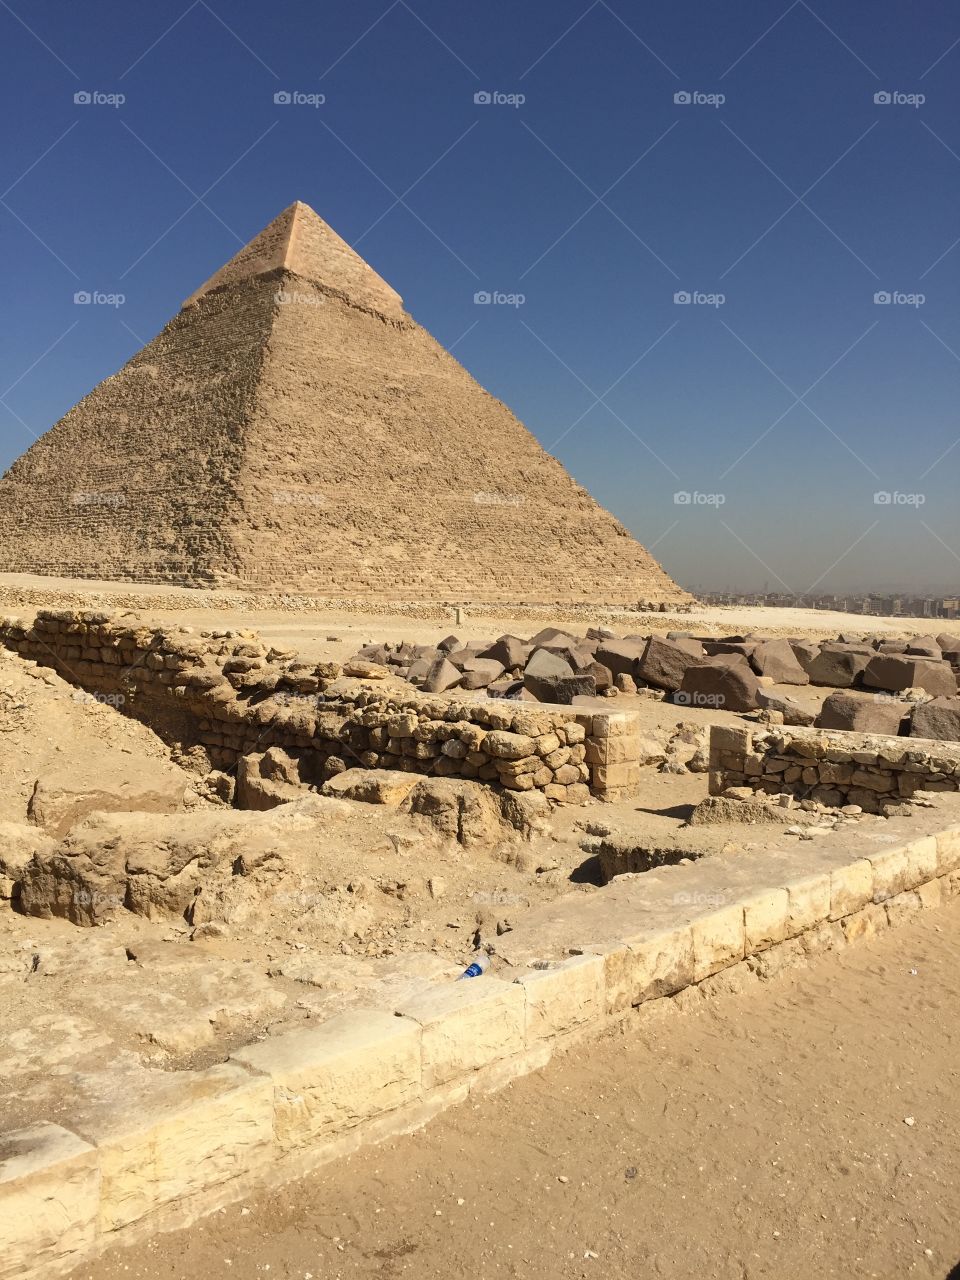 Khufu pyramids 